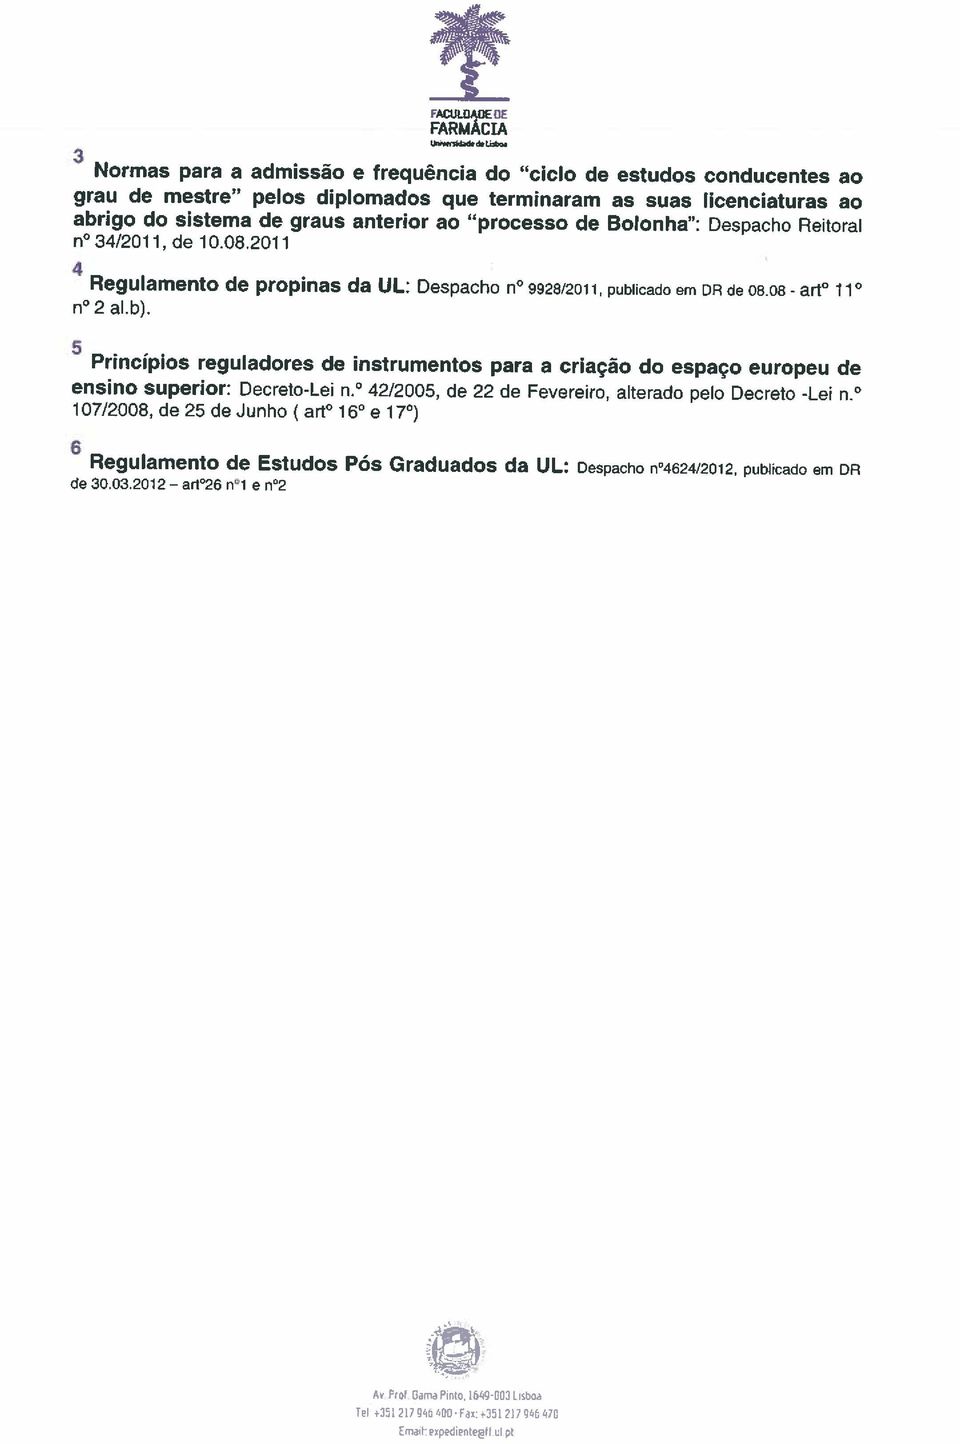 Princípios reguladores de instrumentos para a criação do espaço europeu de ensino superior: Decreto-Lei n. 42/2005, de 22 de Fevereiro, alterado pelo Decreto -Lei n.